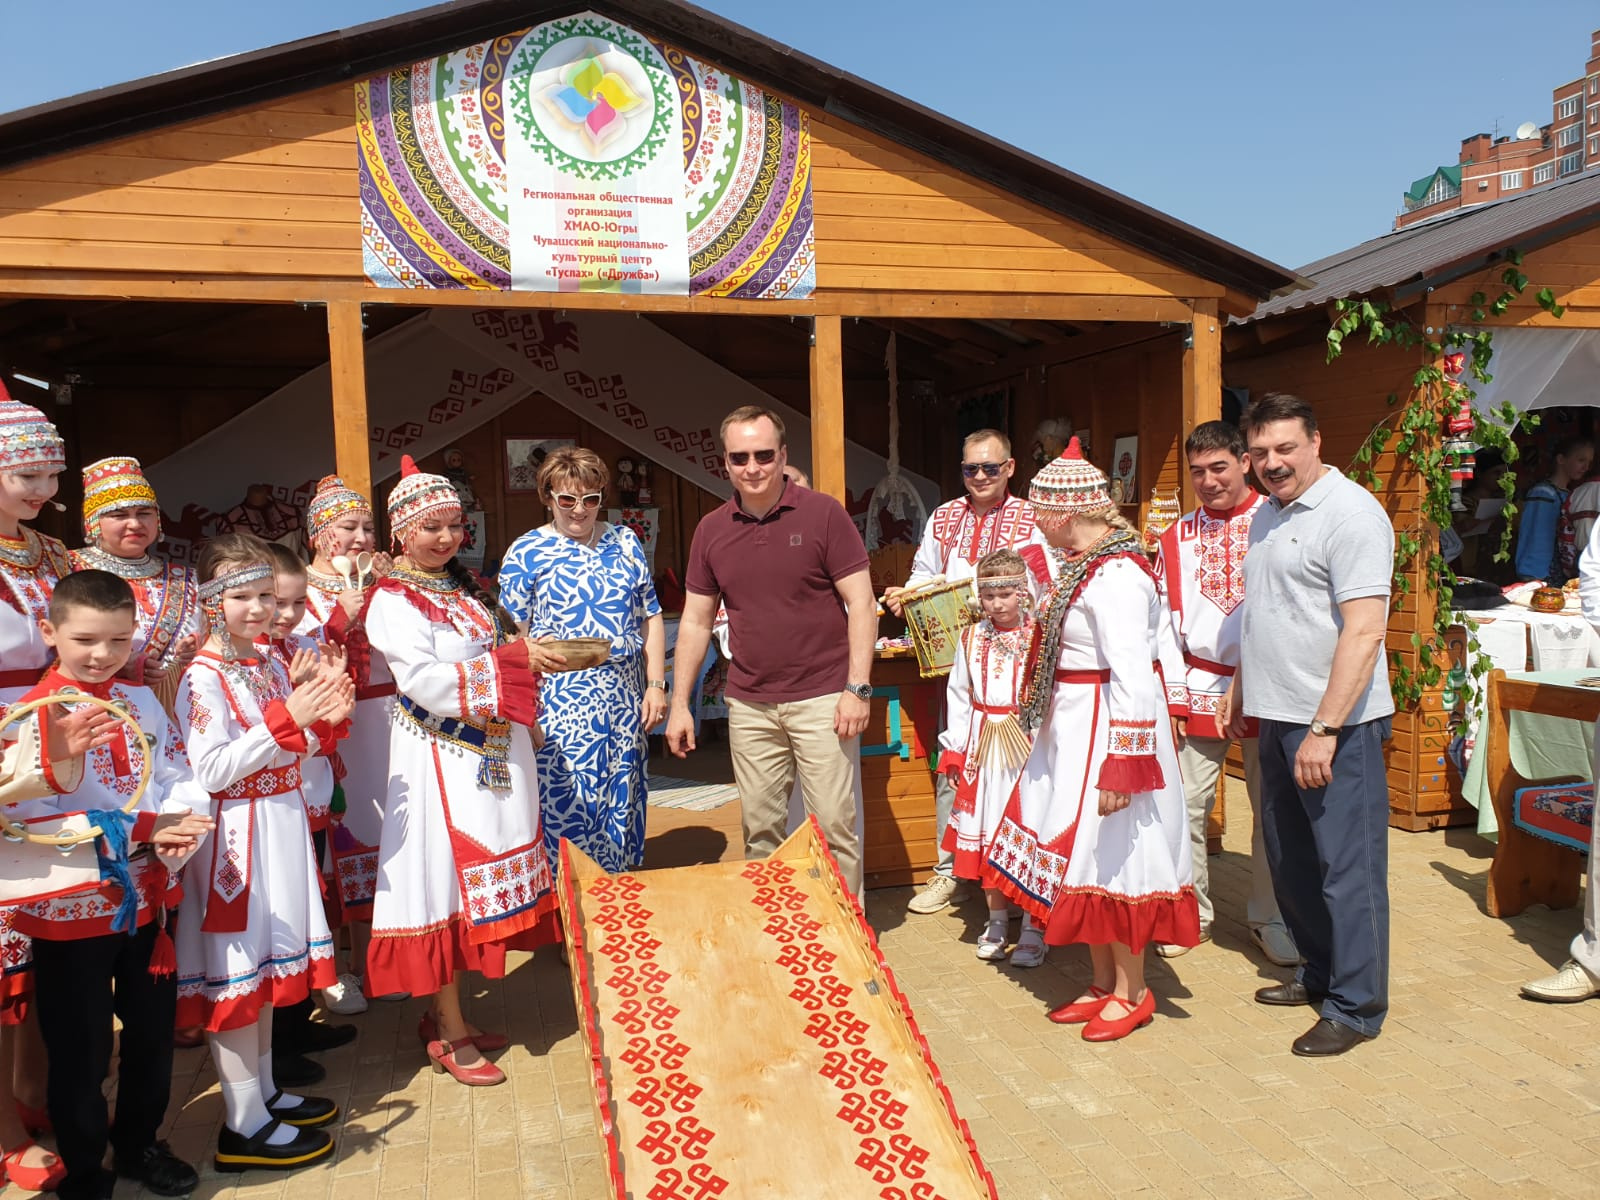 Национальный фестиваль «Соцветие» проводится в Сургуте летом десятки лет